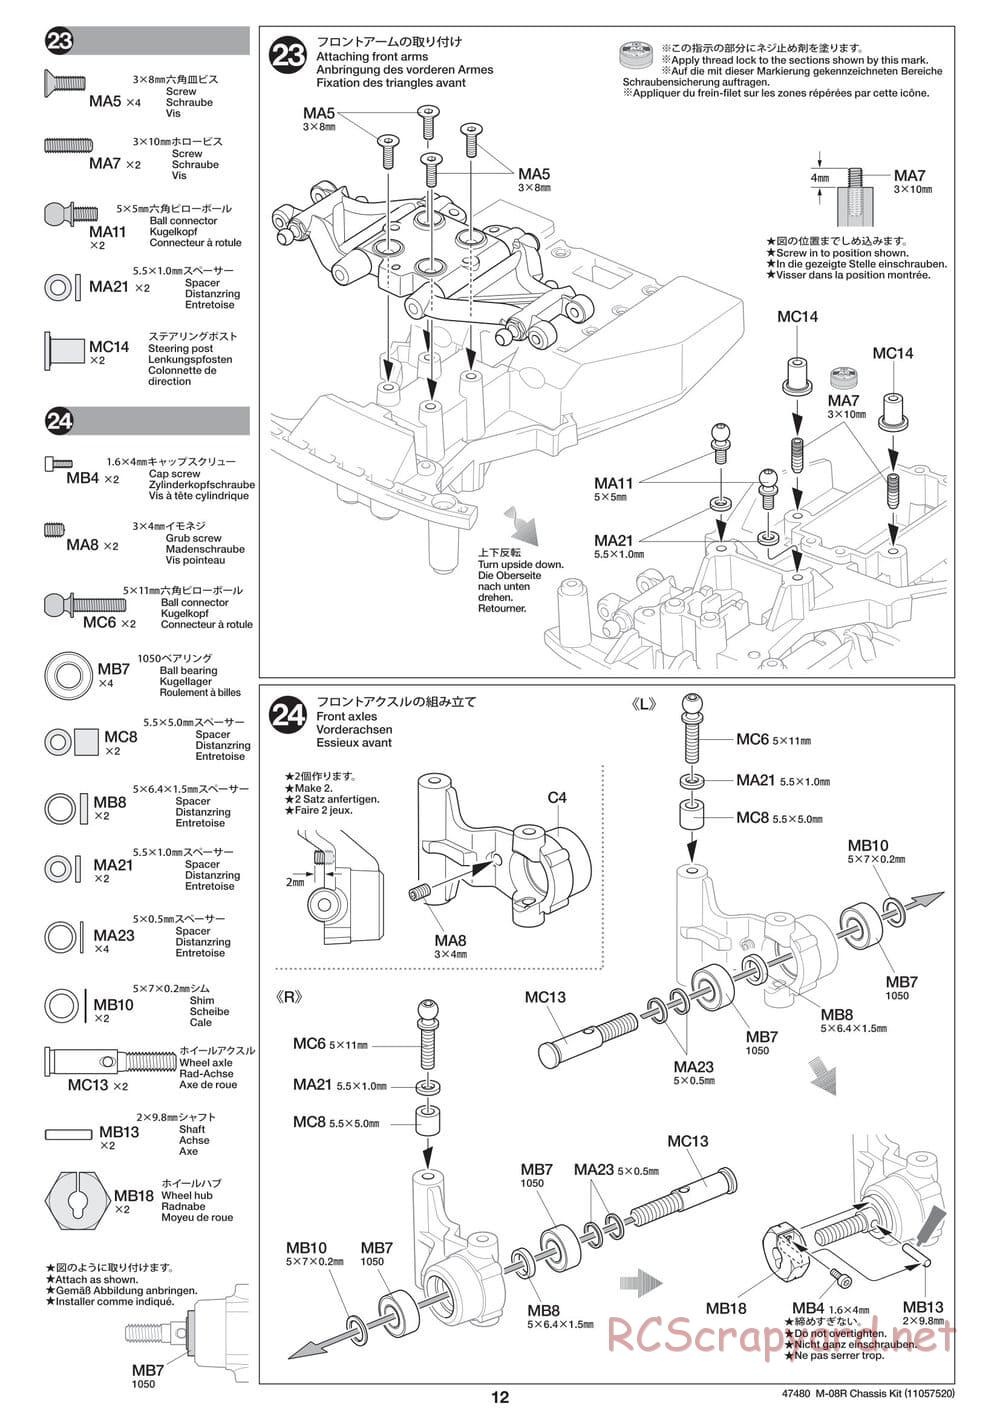 Tamiya - M-08R Chassis - Manual - Page 12